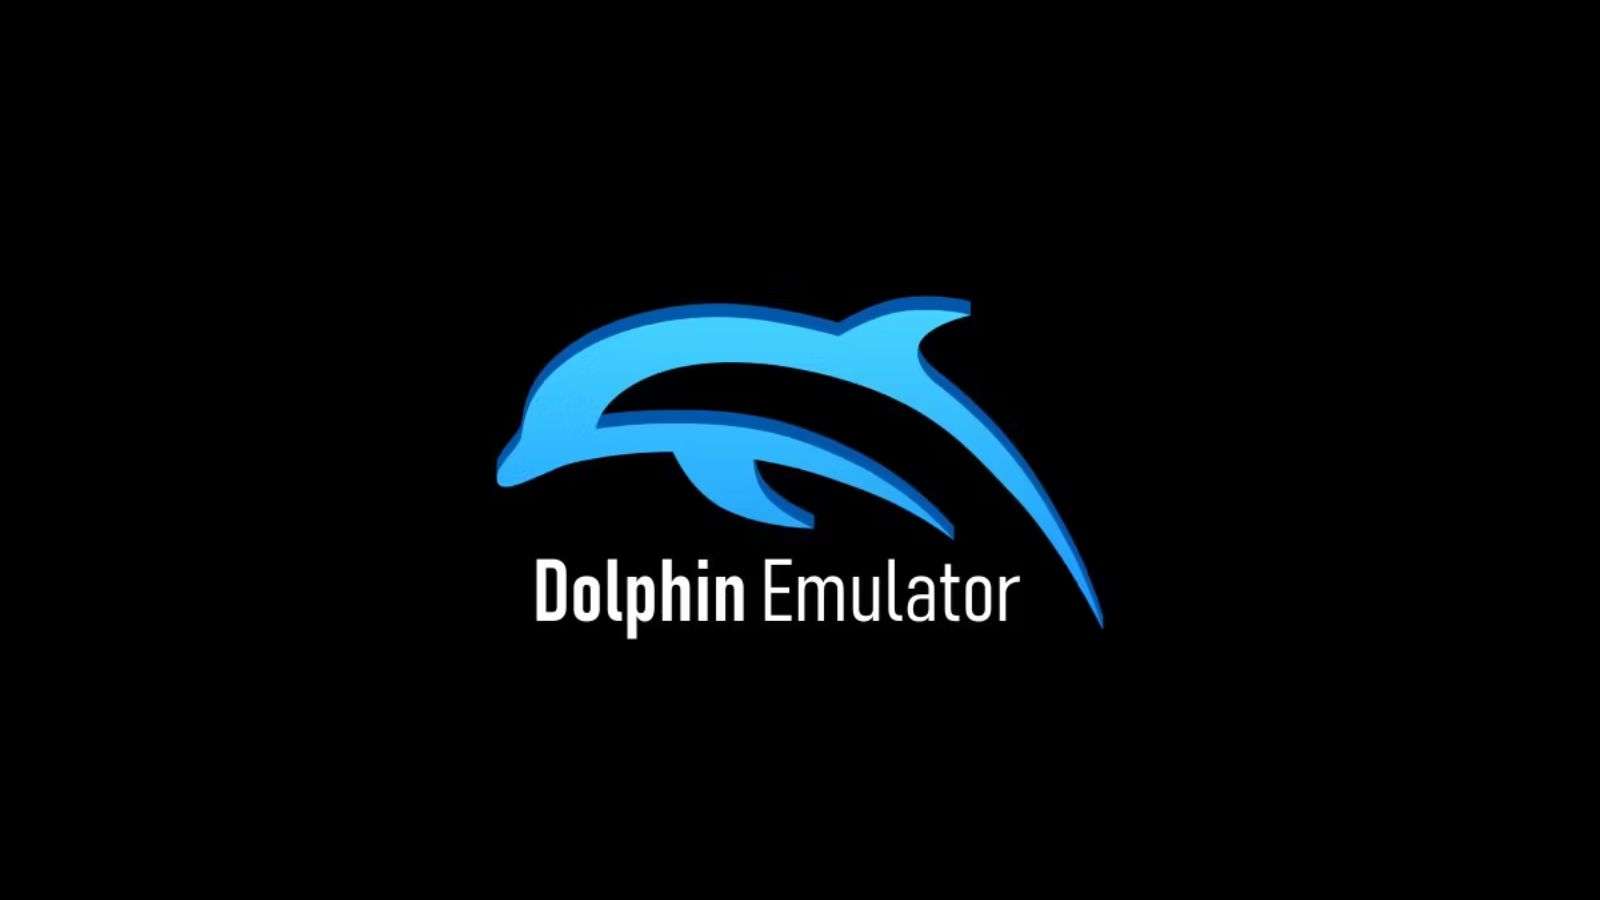 dolphin emulator header